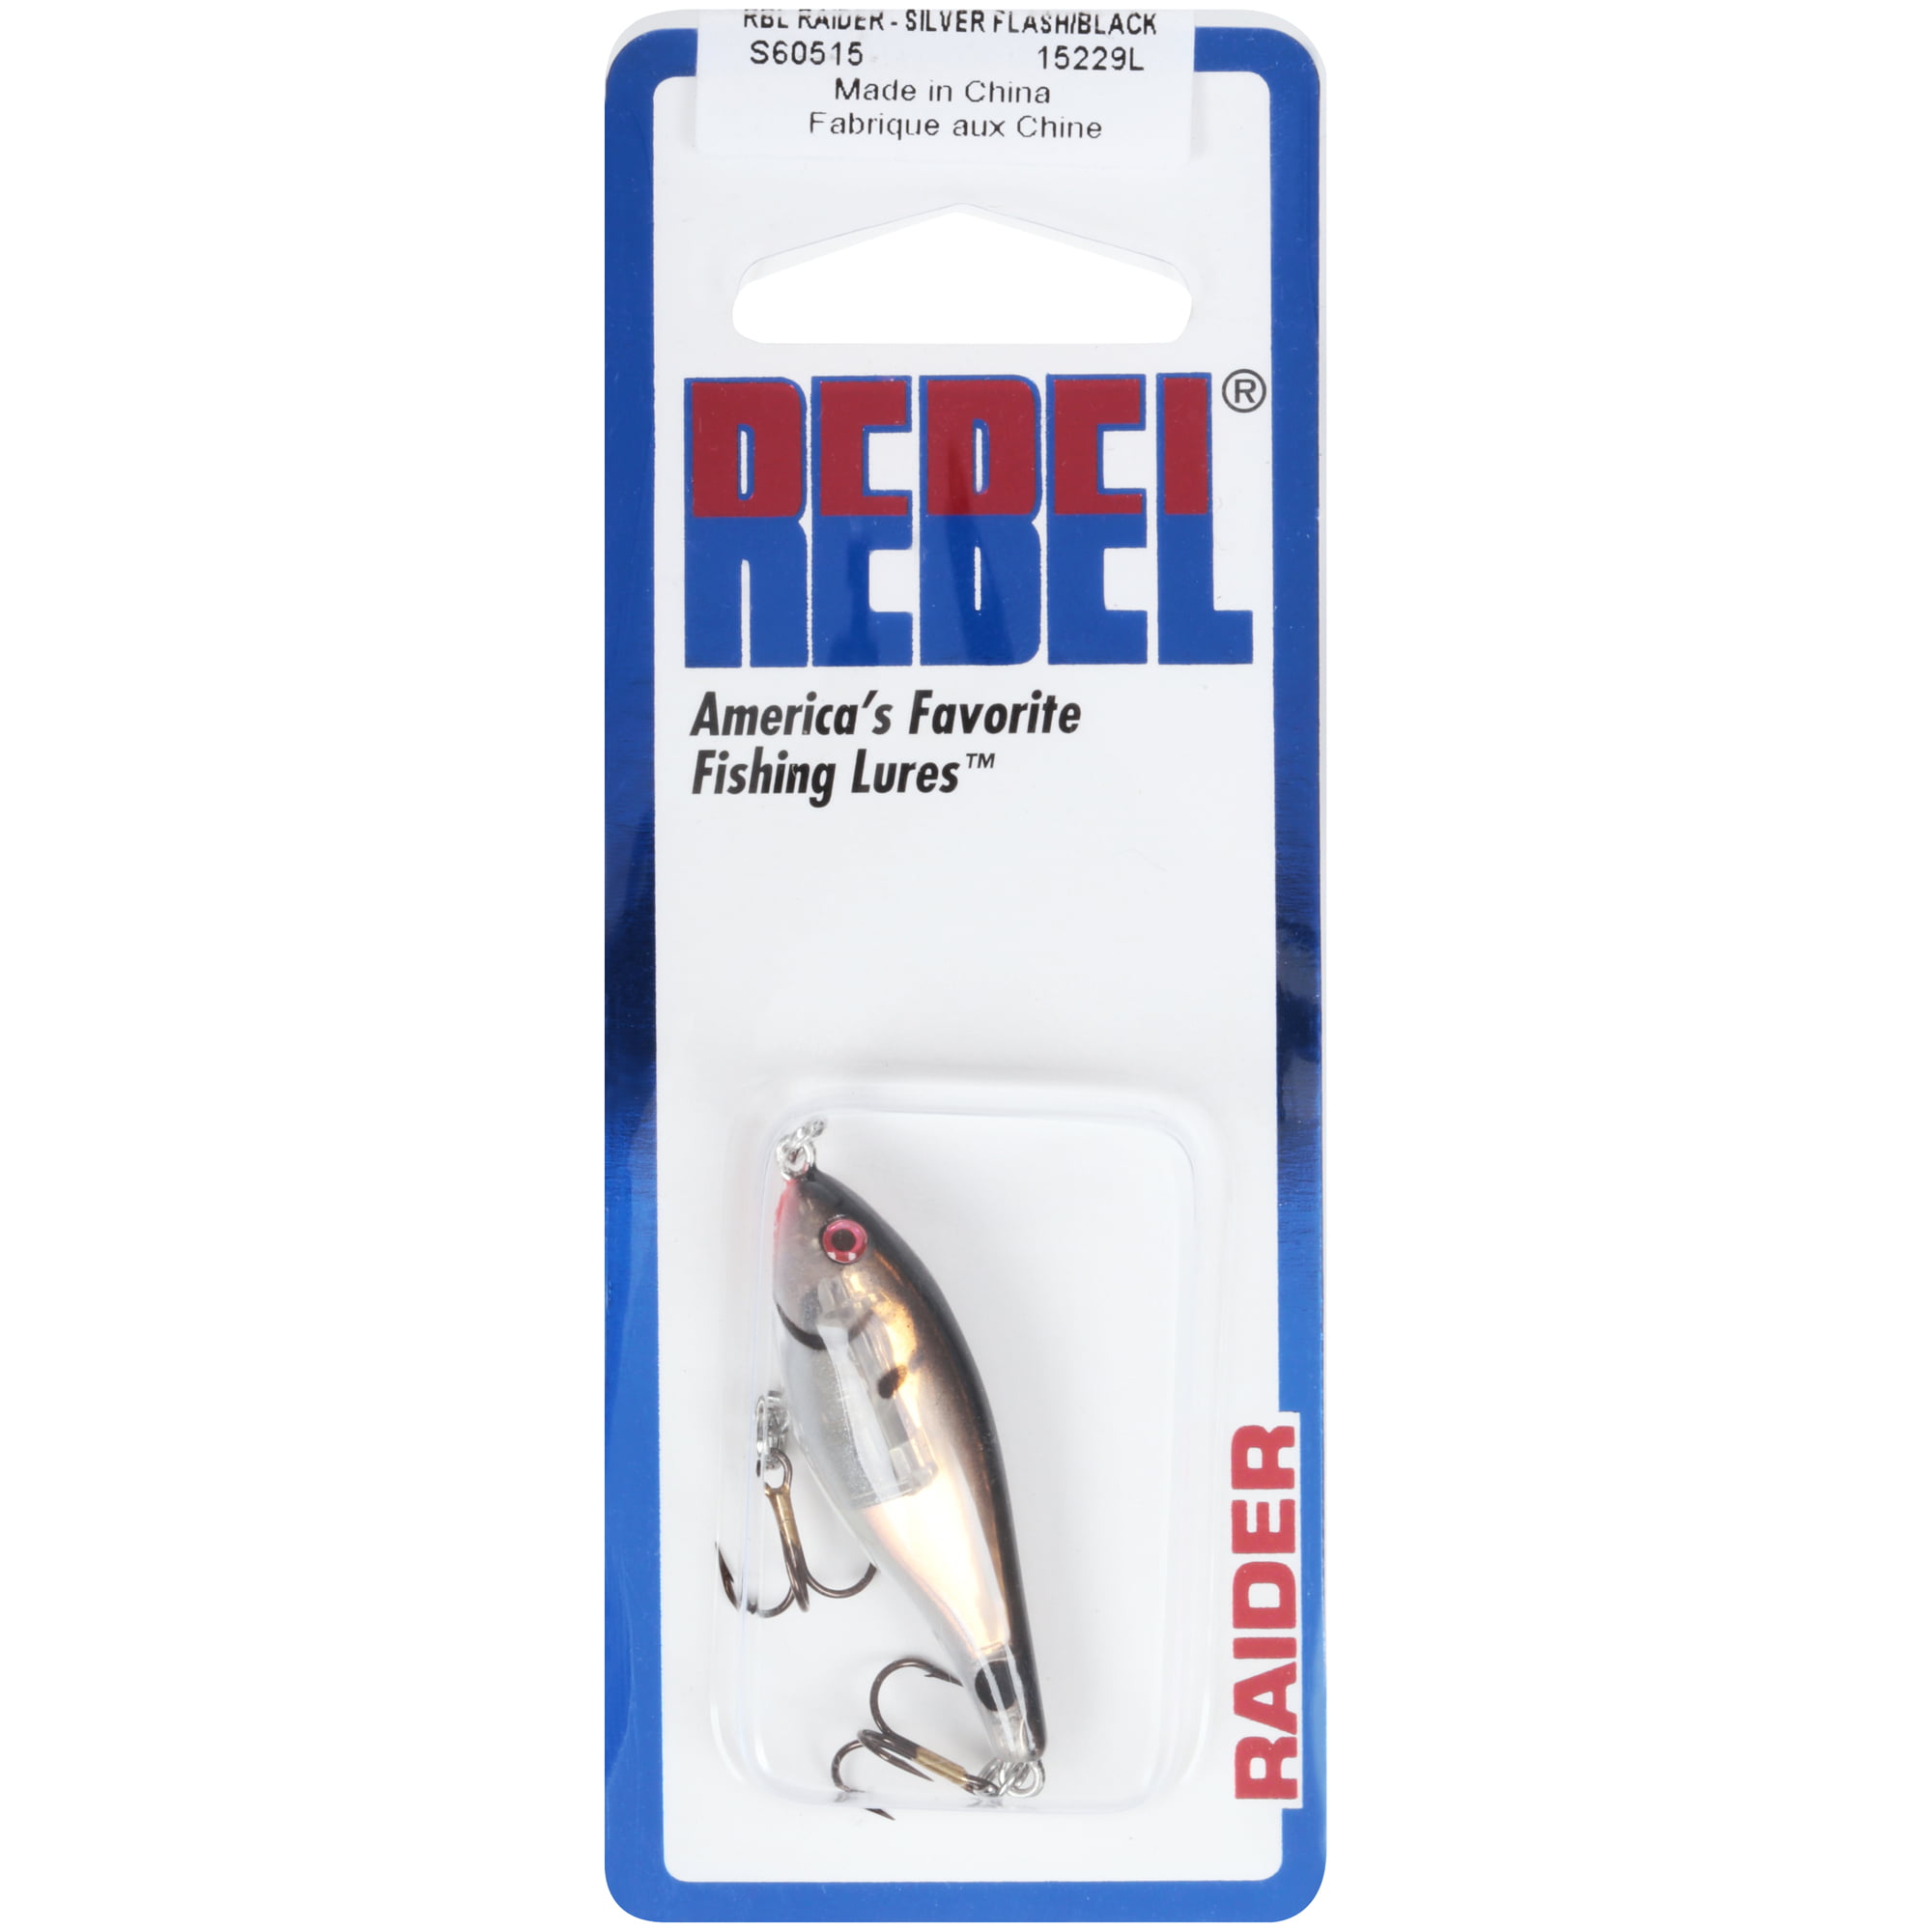 Rebel Raider 1/8 oz Fishing Lure - Silver Flash/Black